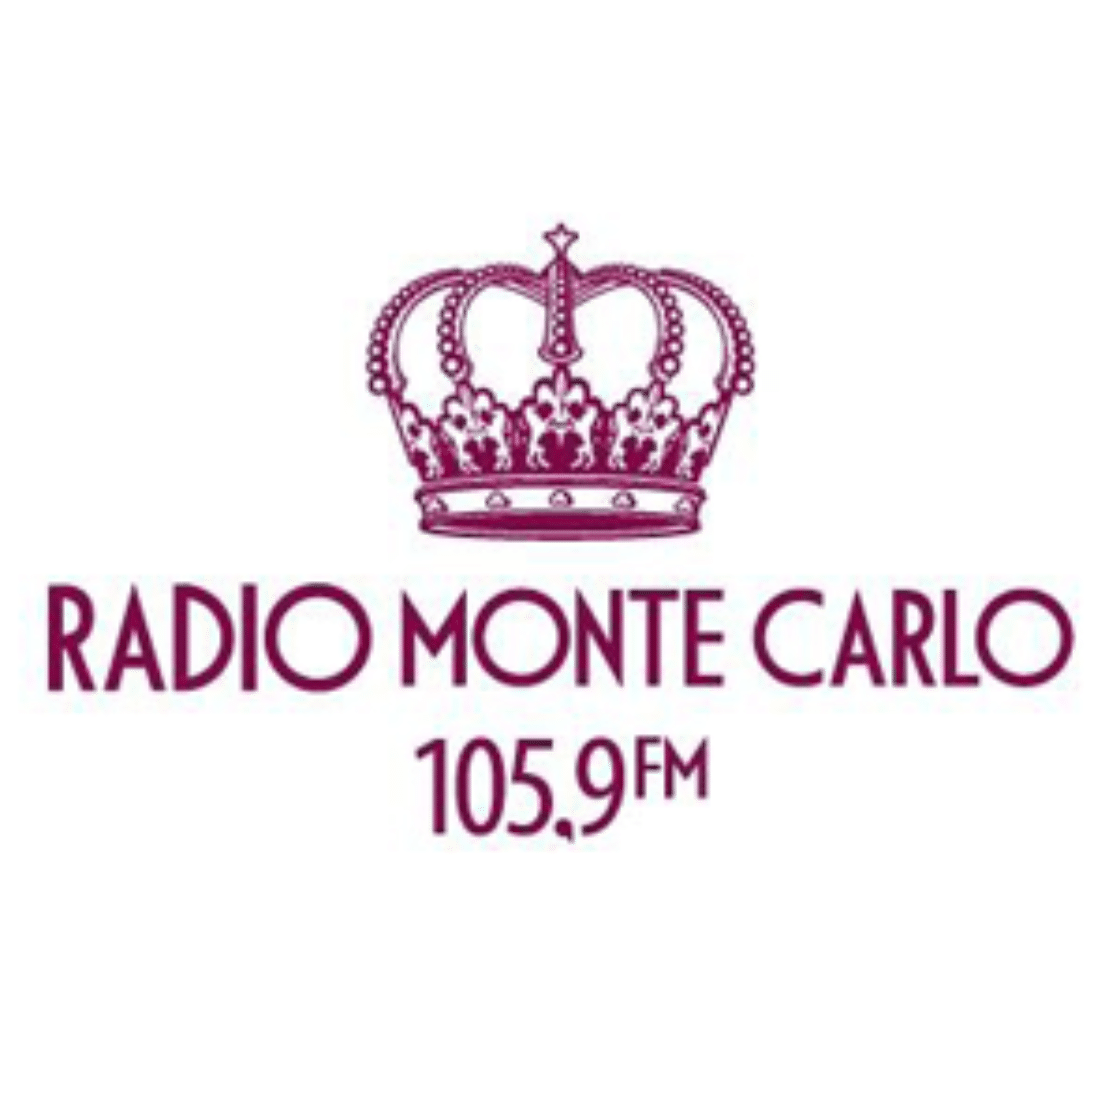 Радио черкесска 105.9. Радио Monte Carlo логотип. Значки радио Монте Карло. Monte Carlo 105.9. Радио Монте-Карло Санкт-Петербург.